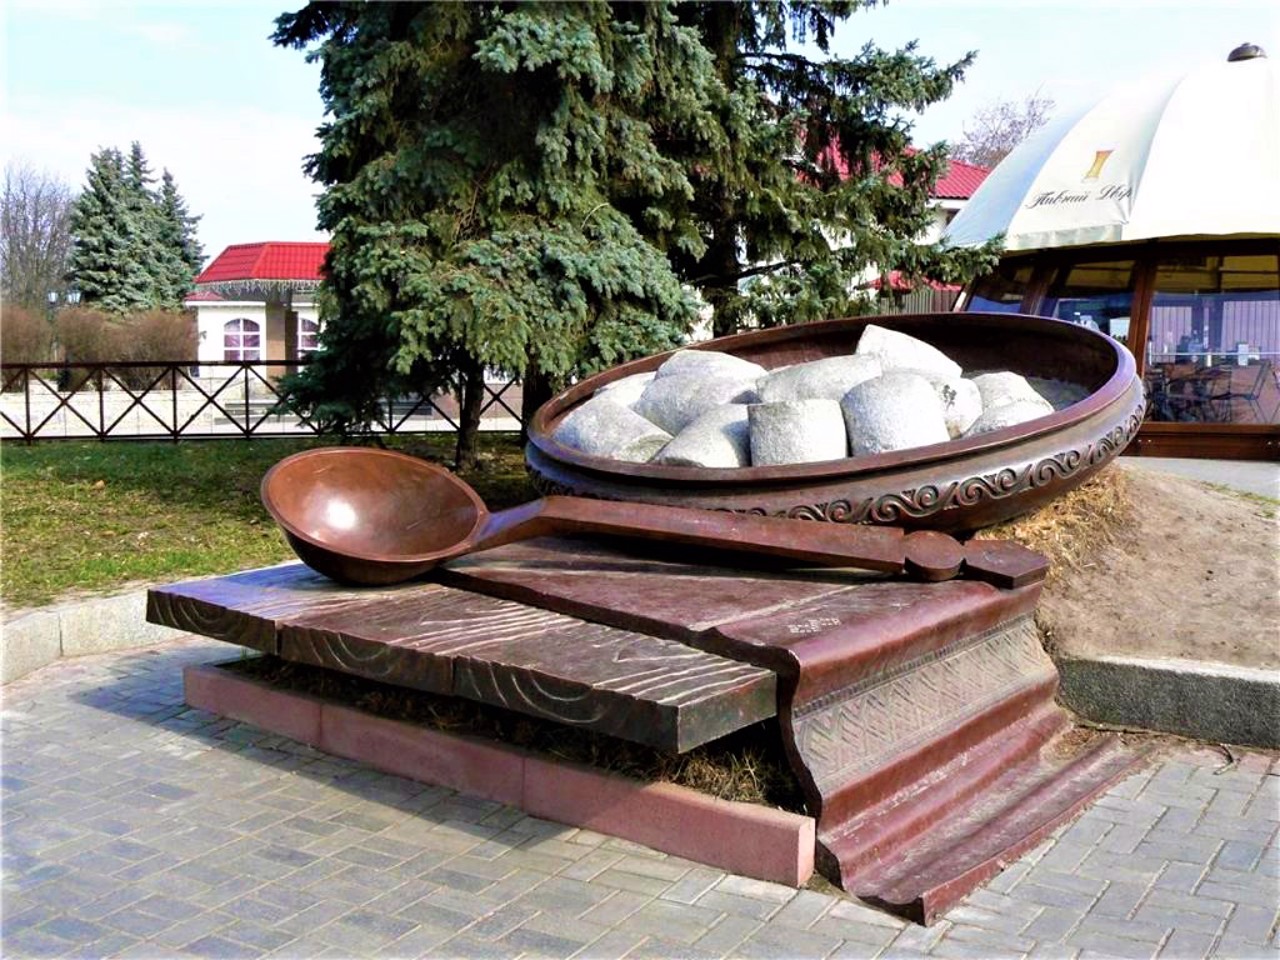 Памятник галушке, Полтава